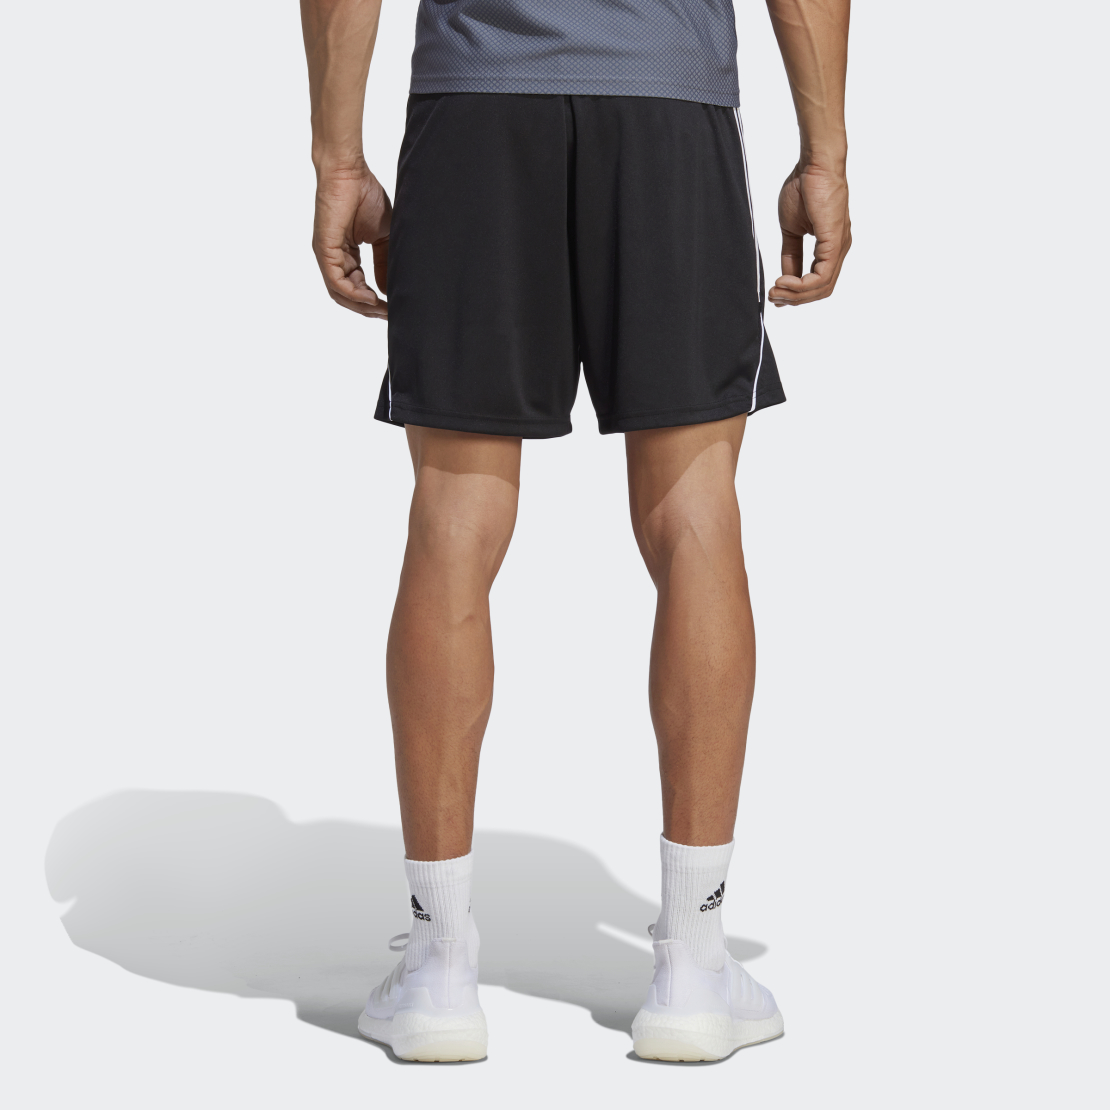 שורט אדידס לגברים | Adidas Tiro 23 Shorts